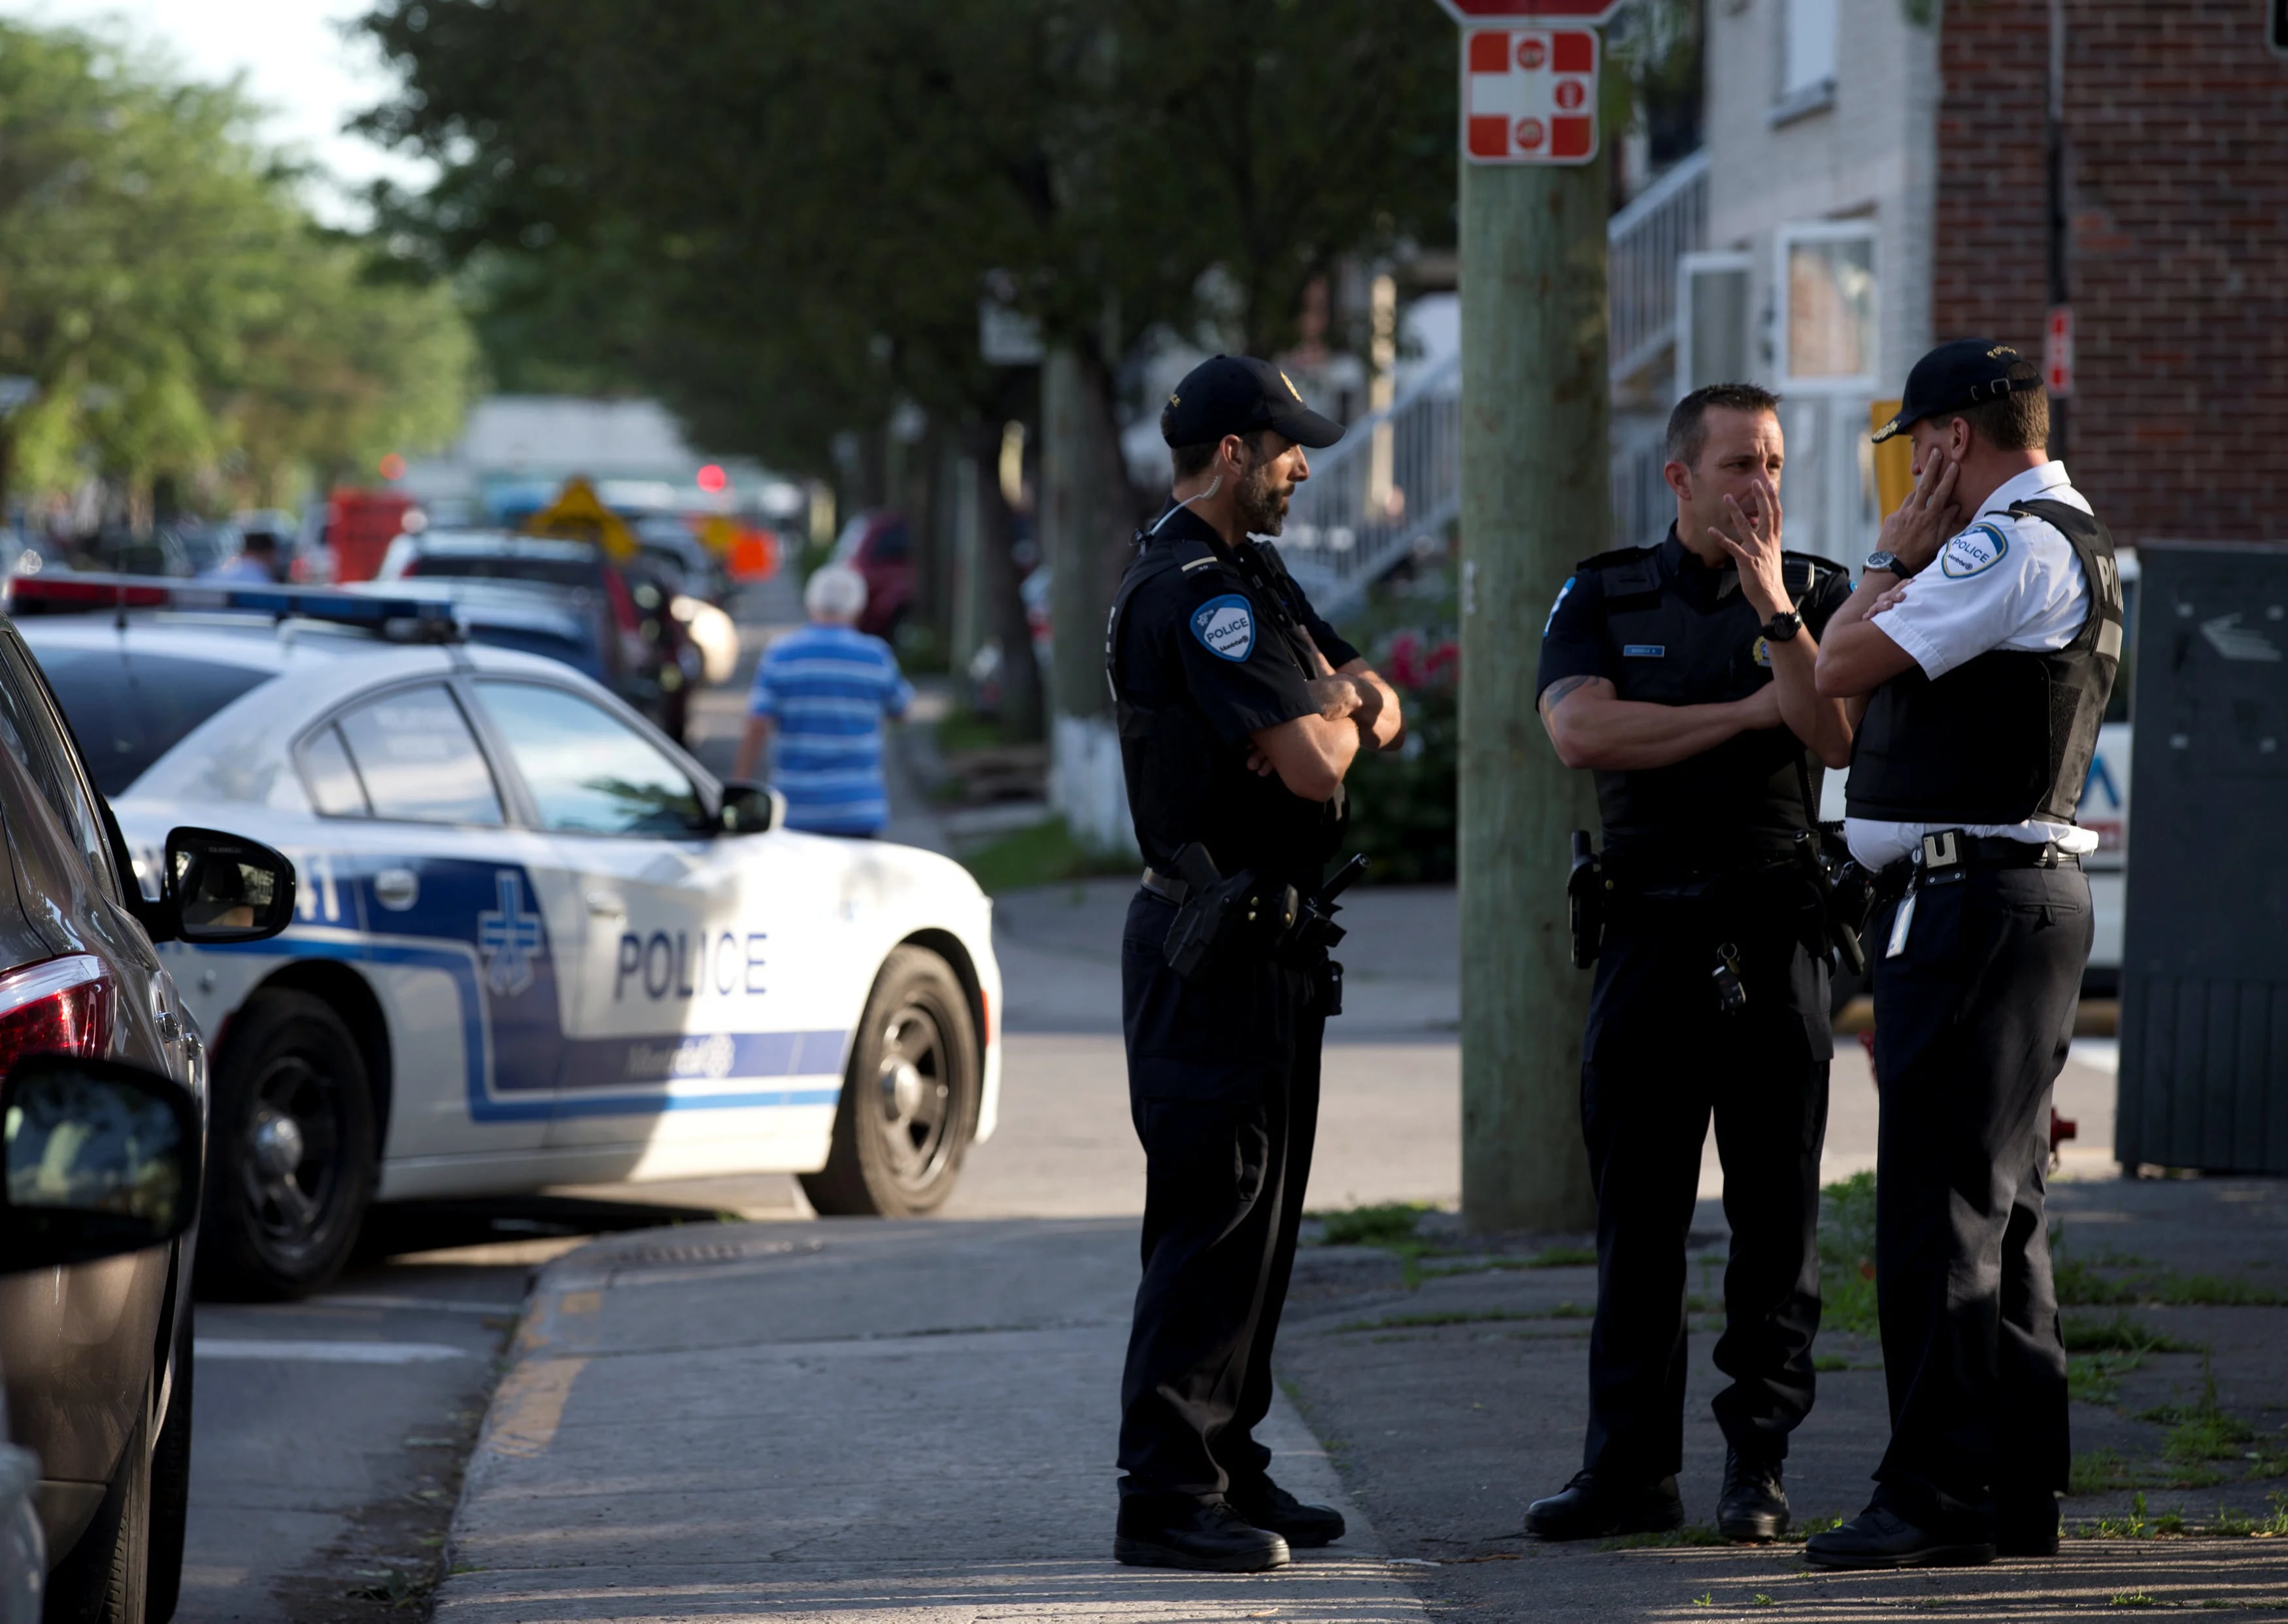 La policía afuera de la casa del sospechoso del ataque, Amor Ftouhi, en Montreal, Quebec, Canadá. (Reuters)